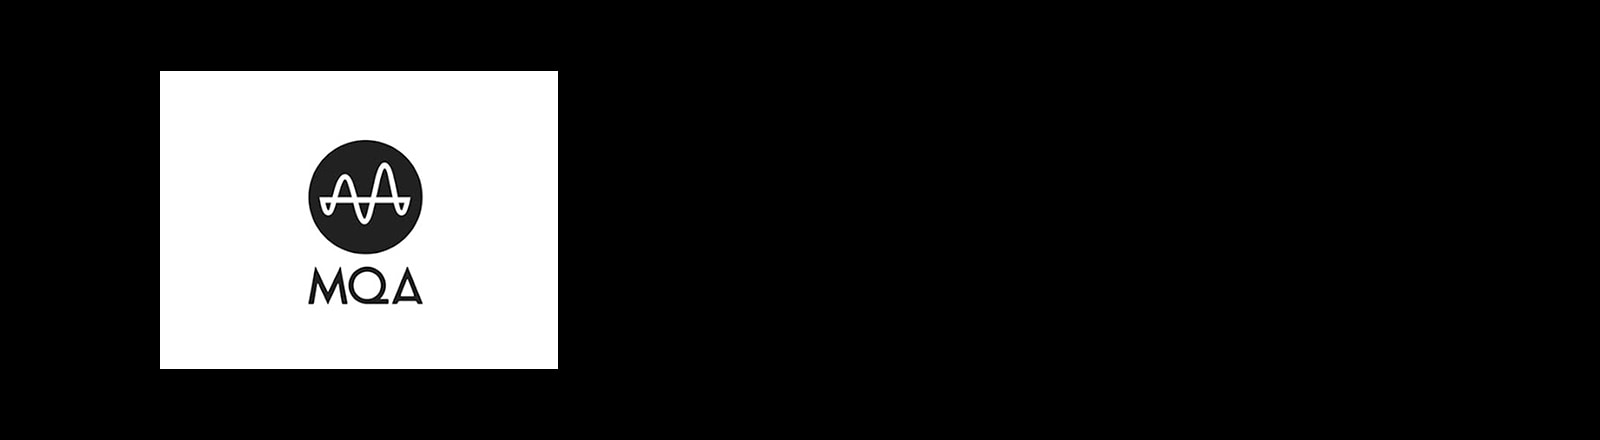 Hình ảnh logo "MQA"